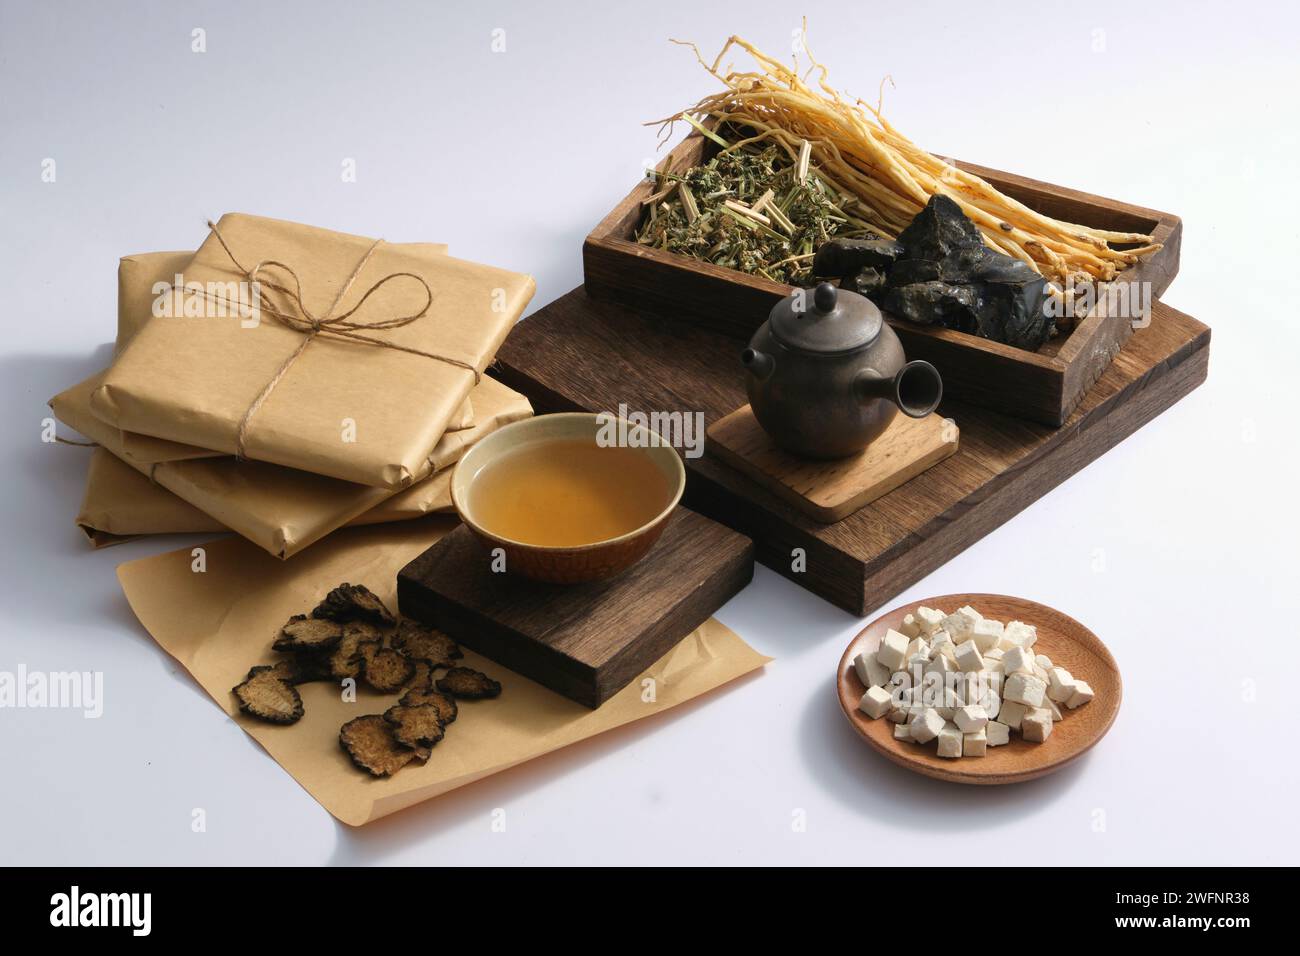 Un plat de Poria cocos, Szechuan Lovage Rhizome, un bol de médecine et un pot en terre mis sur un podium, exposé avec un plateau de quelques herbes. Herbal medici Banque D'Images